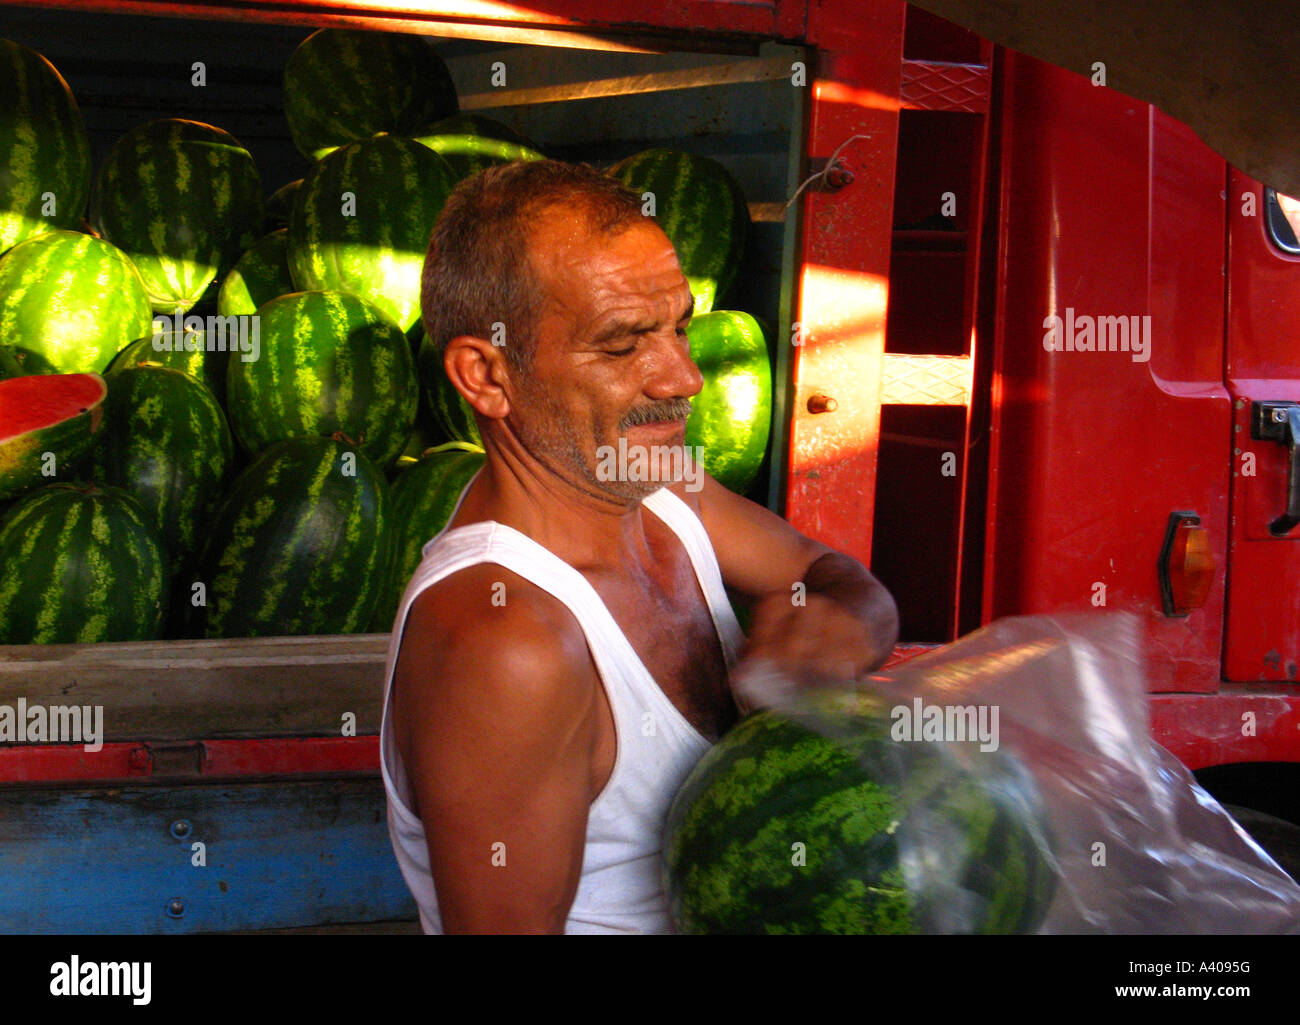 turk-sells-watermelons-at-street-bazaar-alanya-turkey-A4095G.jpg